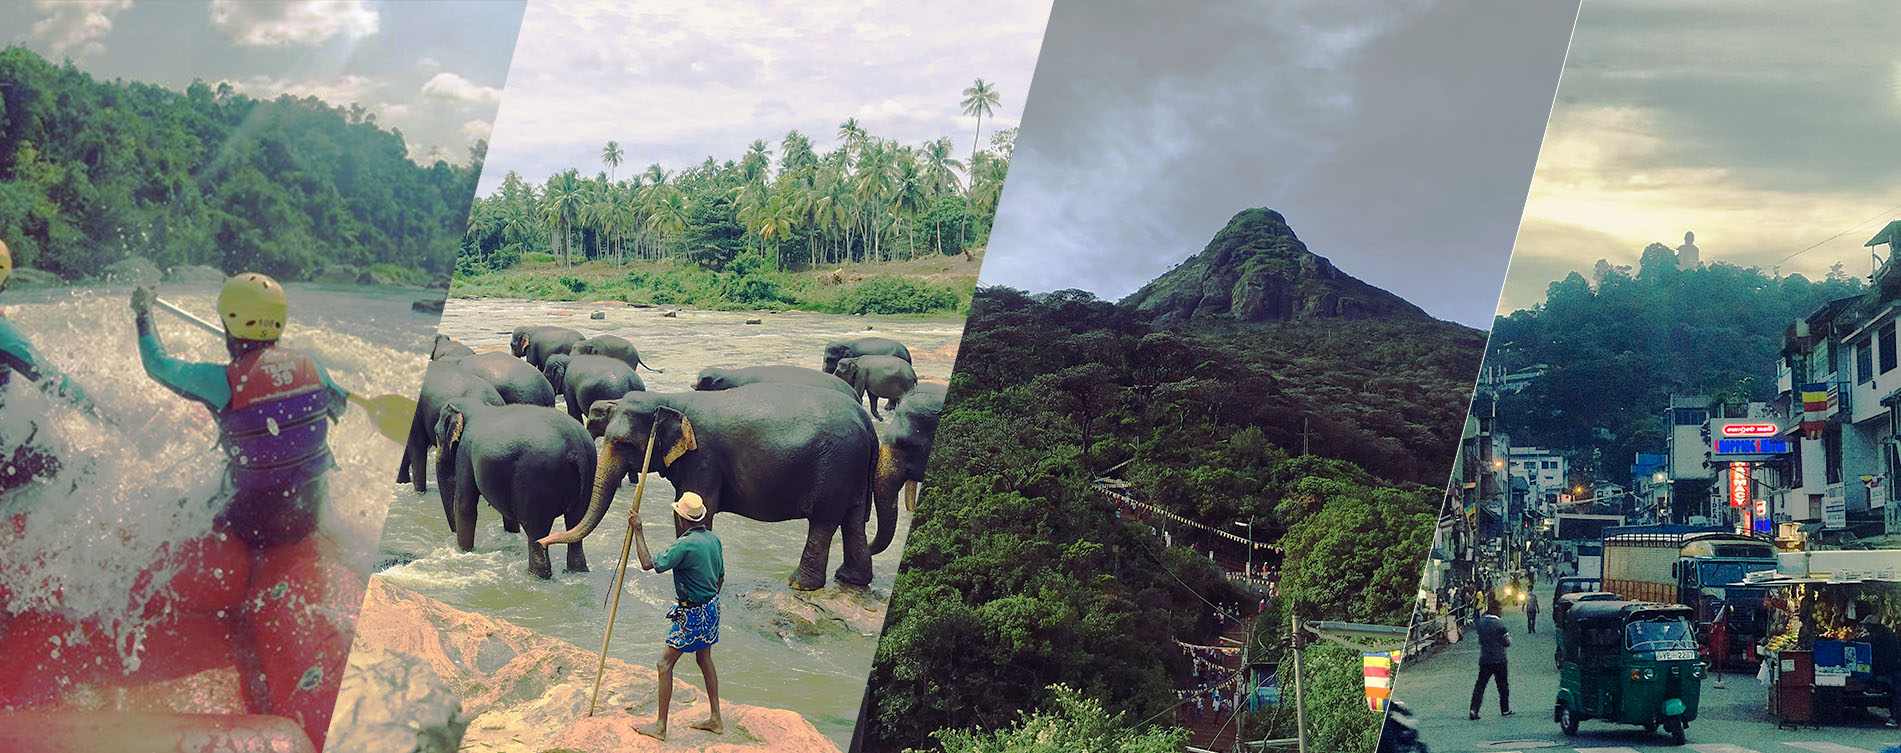 Sri Lanka Adventures